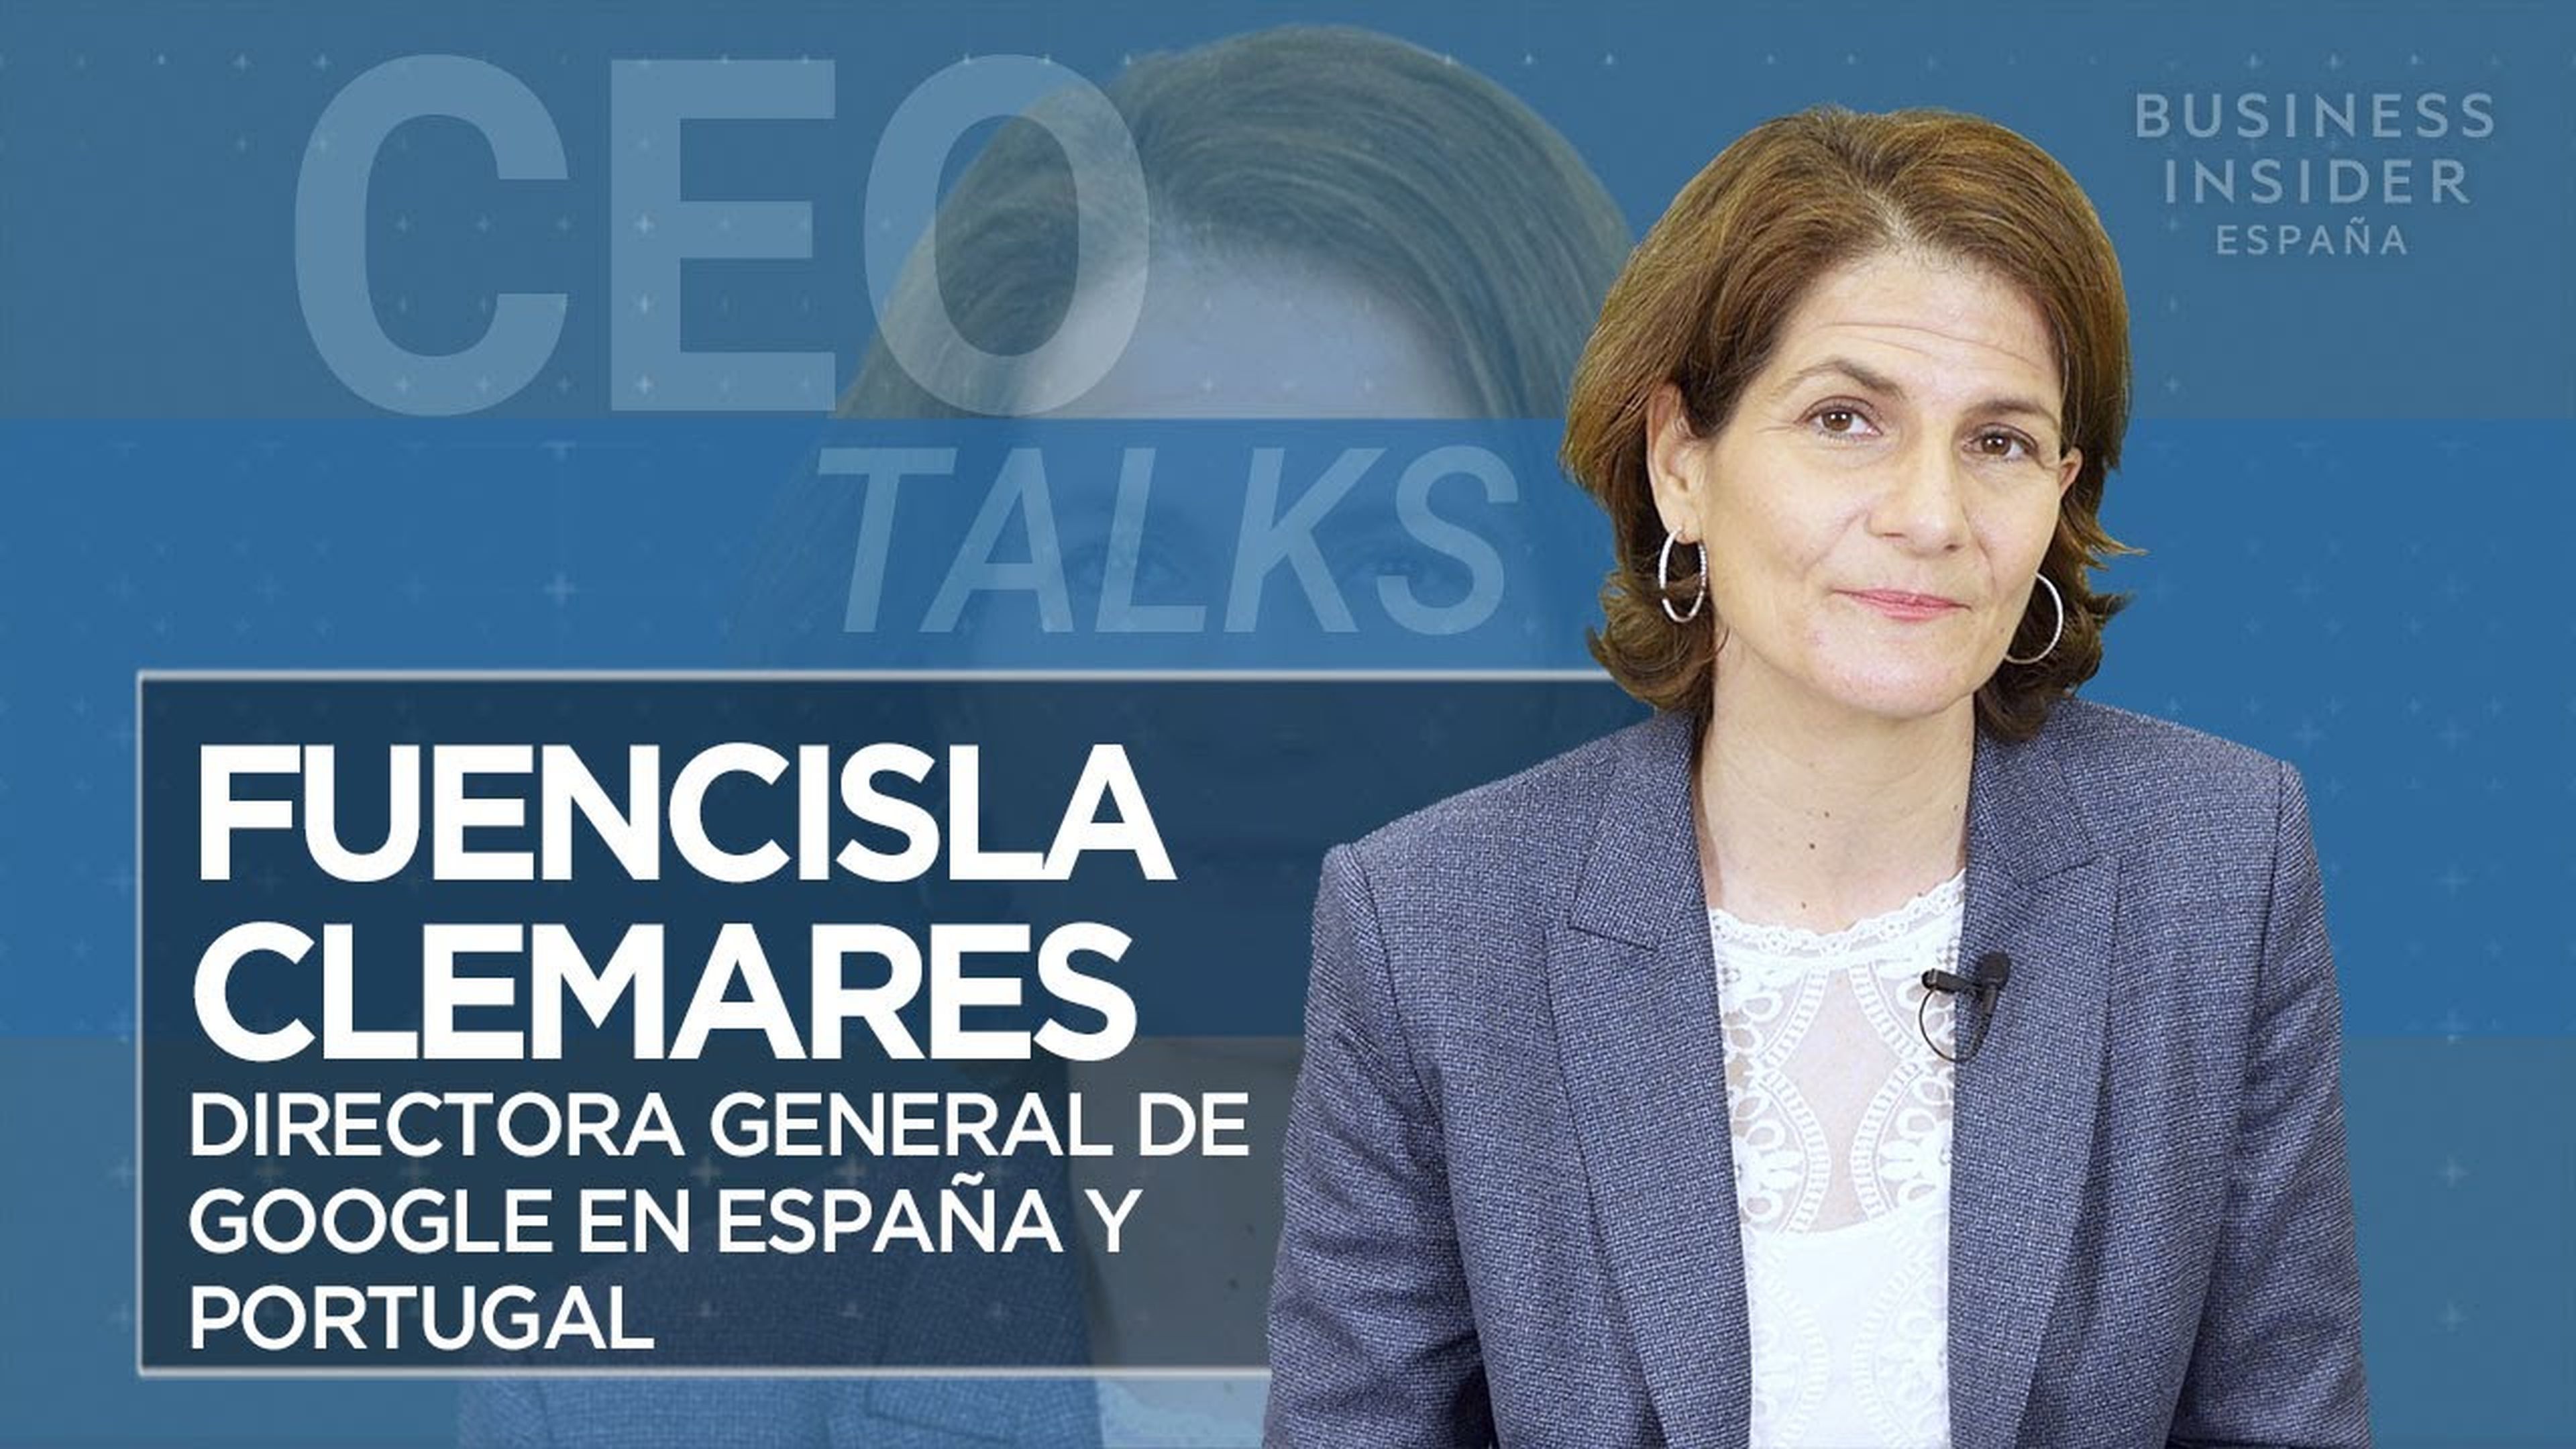 CEO Talks: Fuencisla Clemares Directora general de Google en España y Portugal